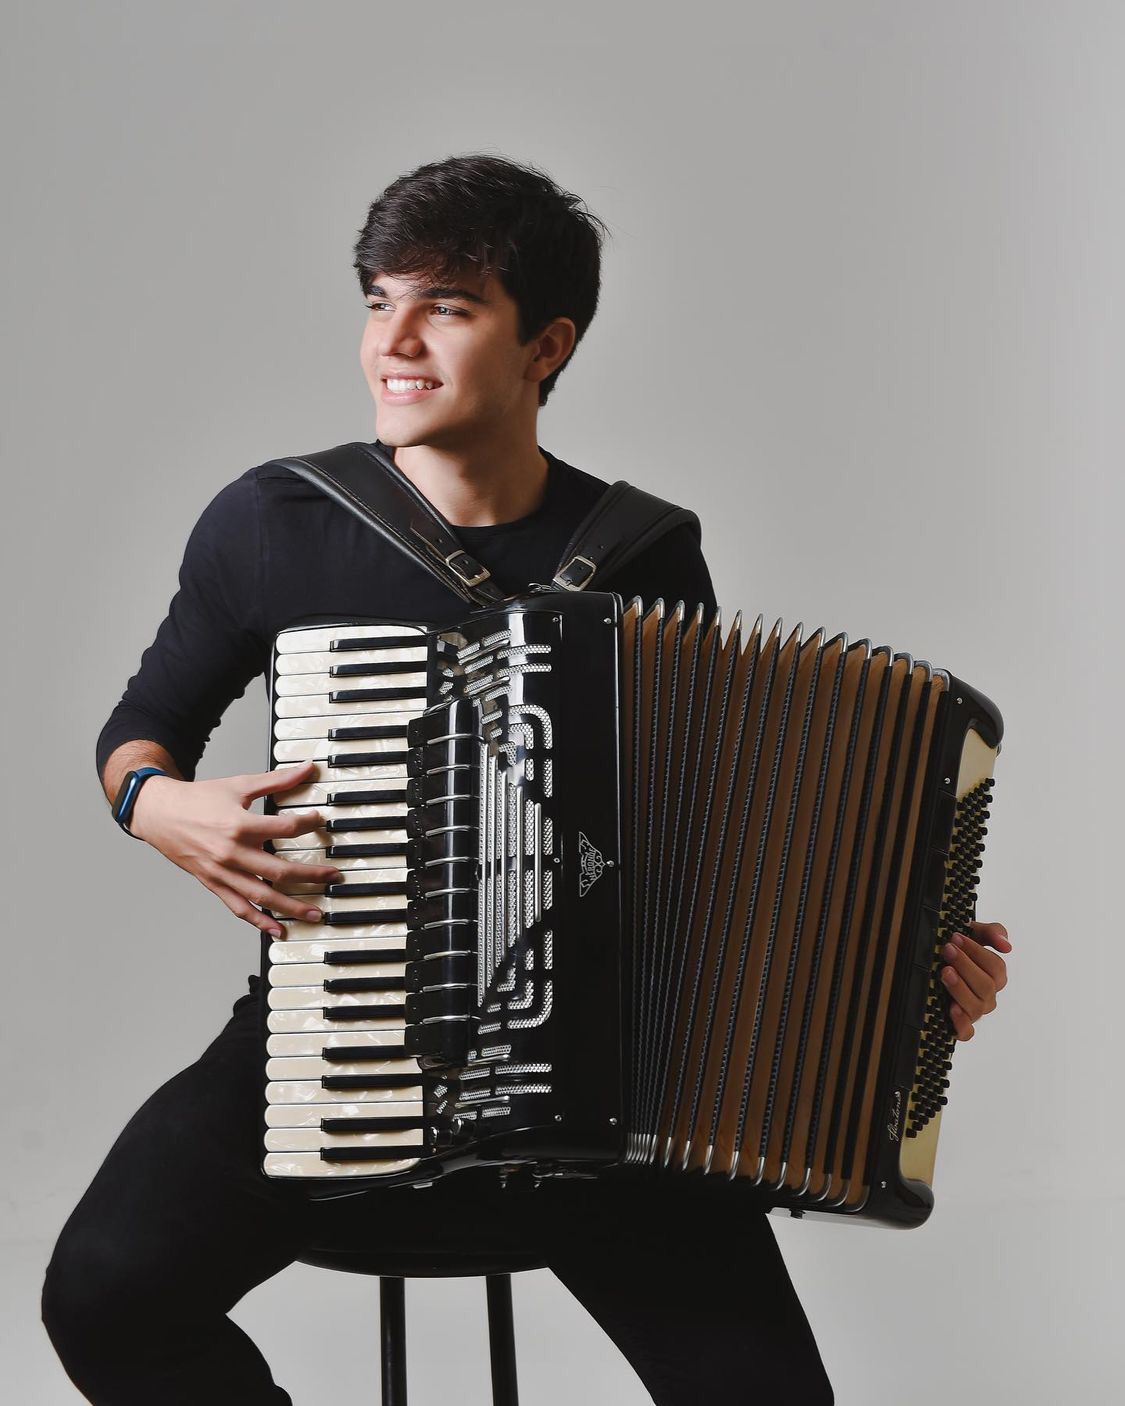 Filho de Waldonys, Luciano Moreno inicia trajetória profissional na música